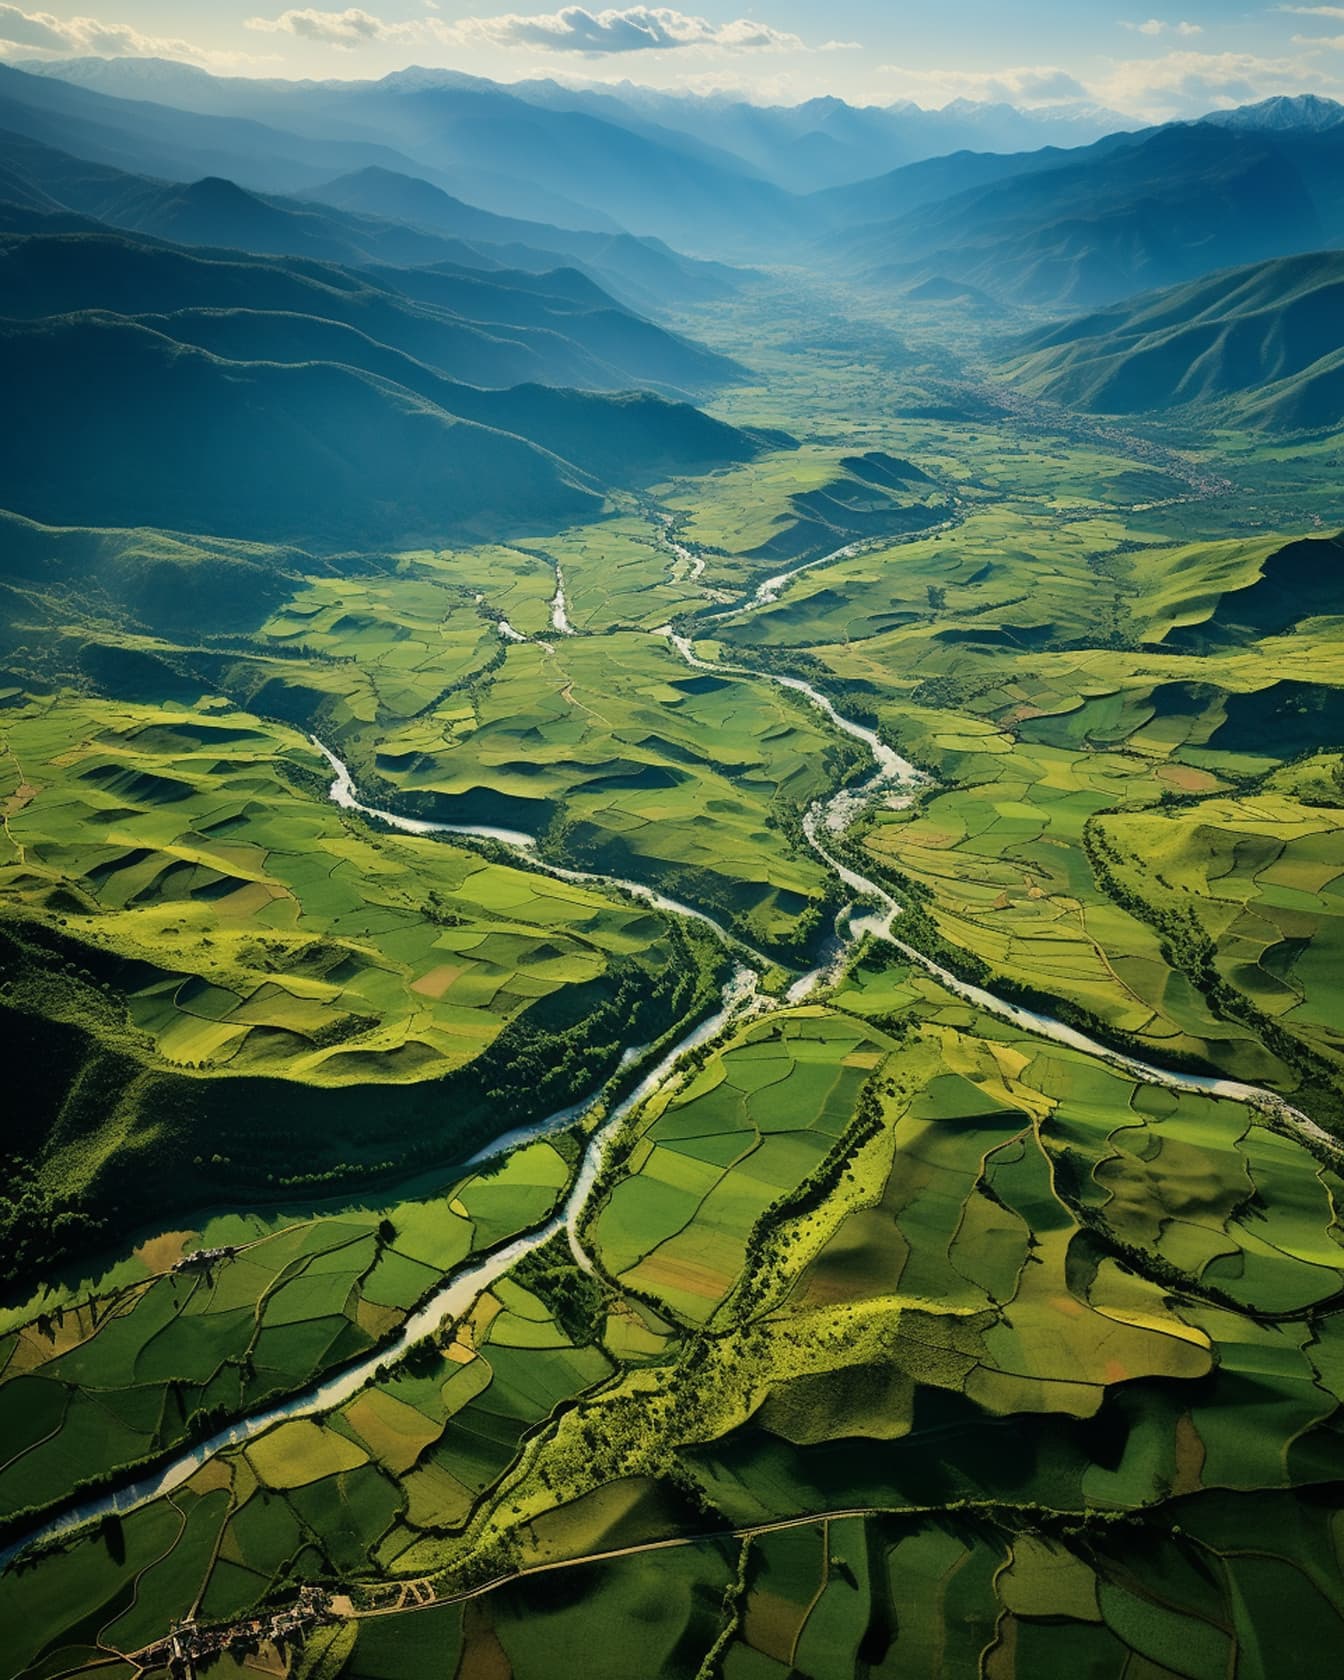 Campi agricoli giallo verdastri nella fotografia aerea della valle